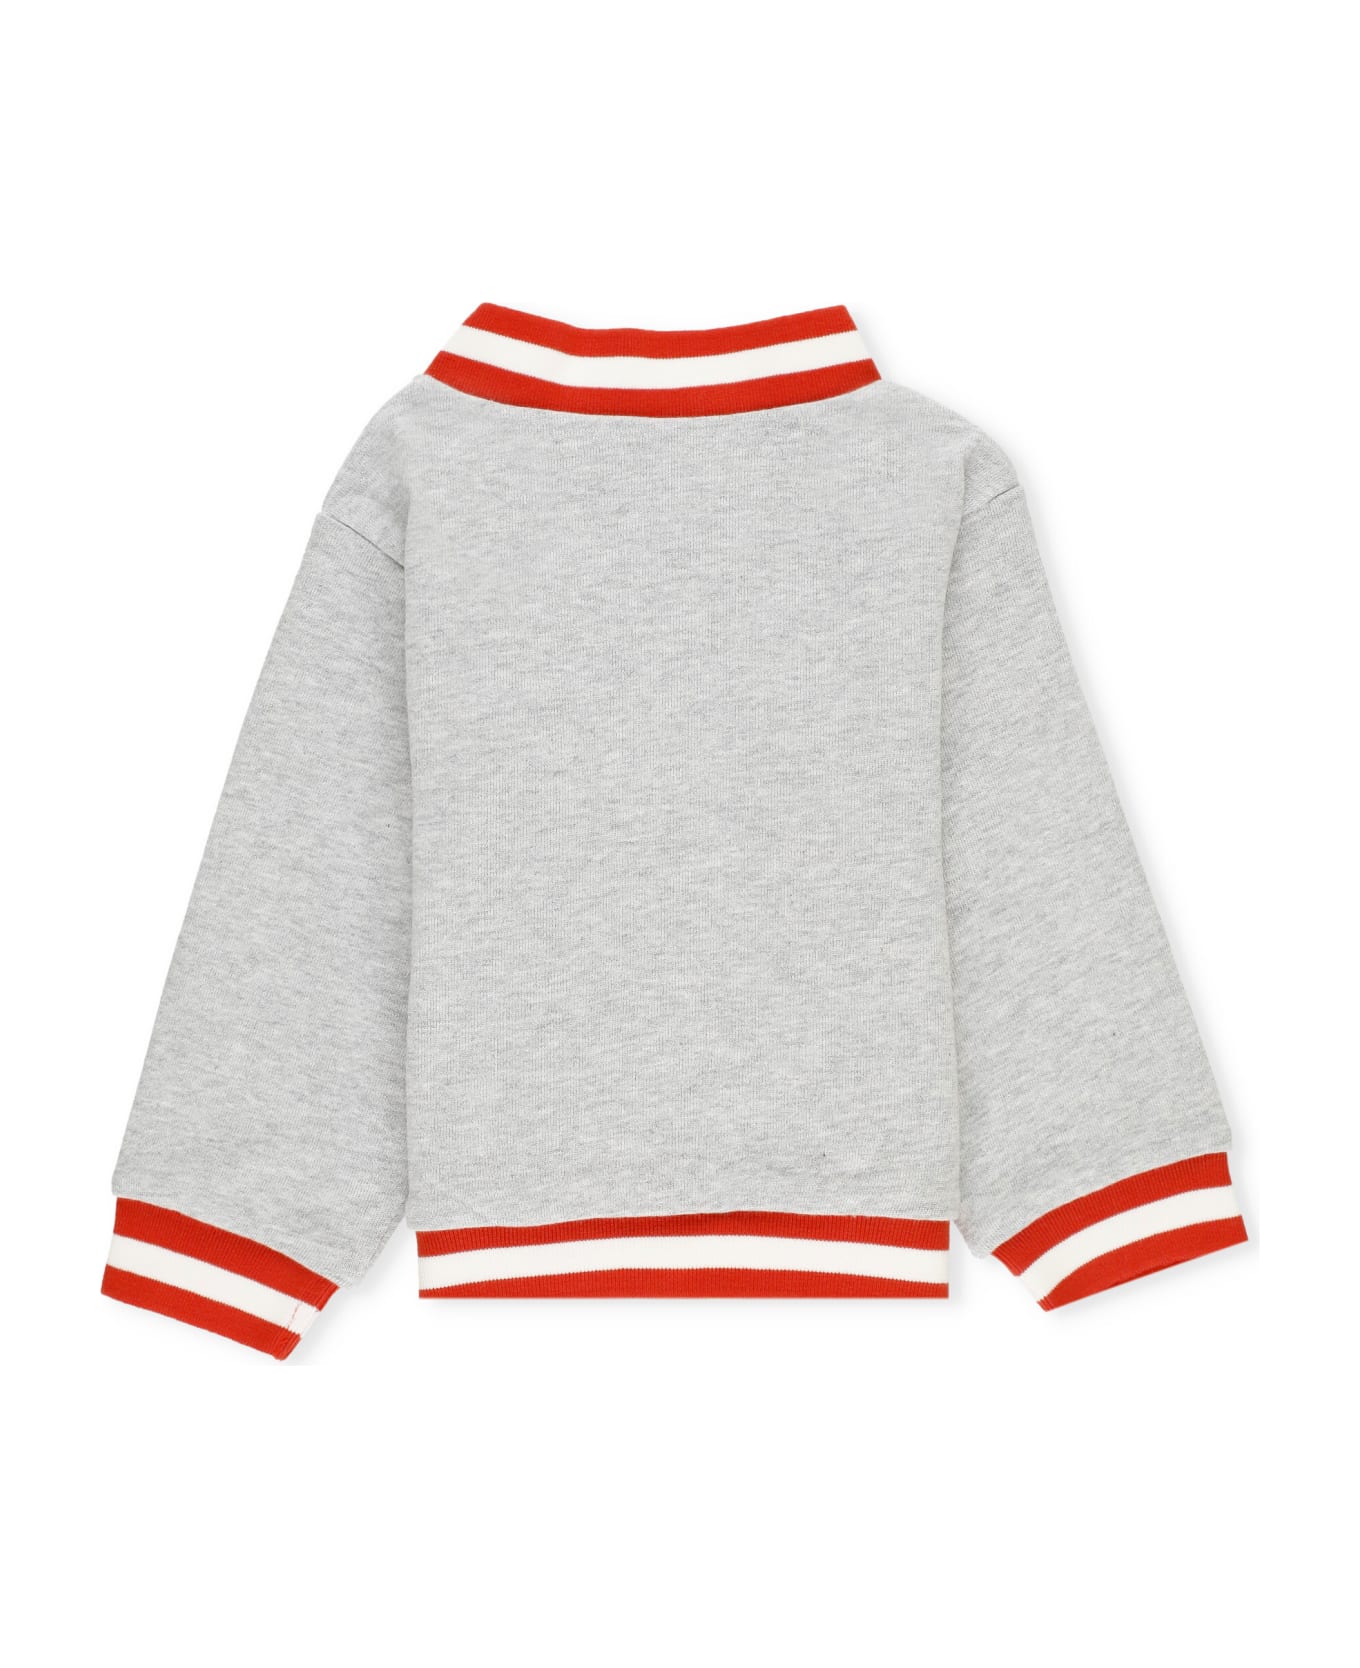 Stella McCartney Sweatshirt With Logo - Grey